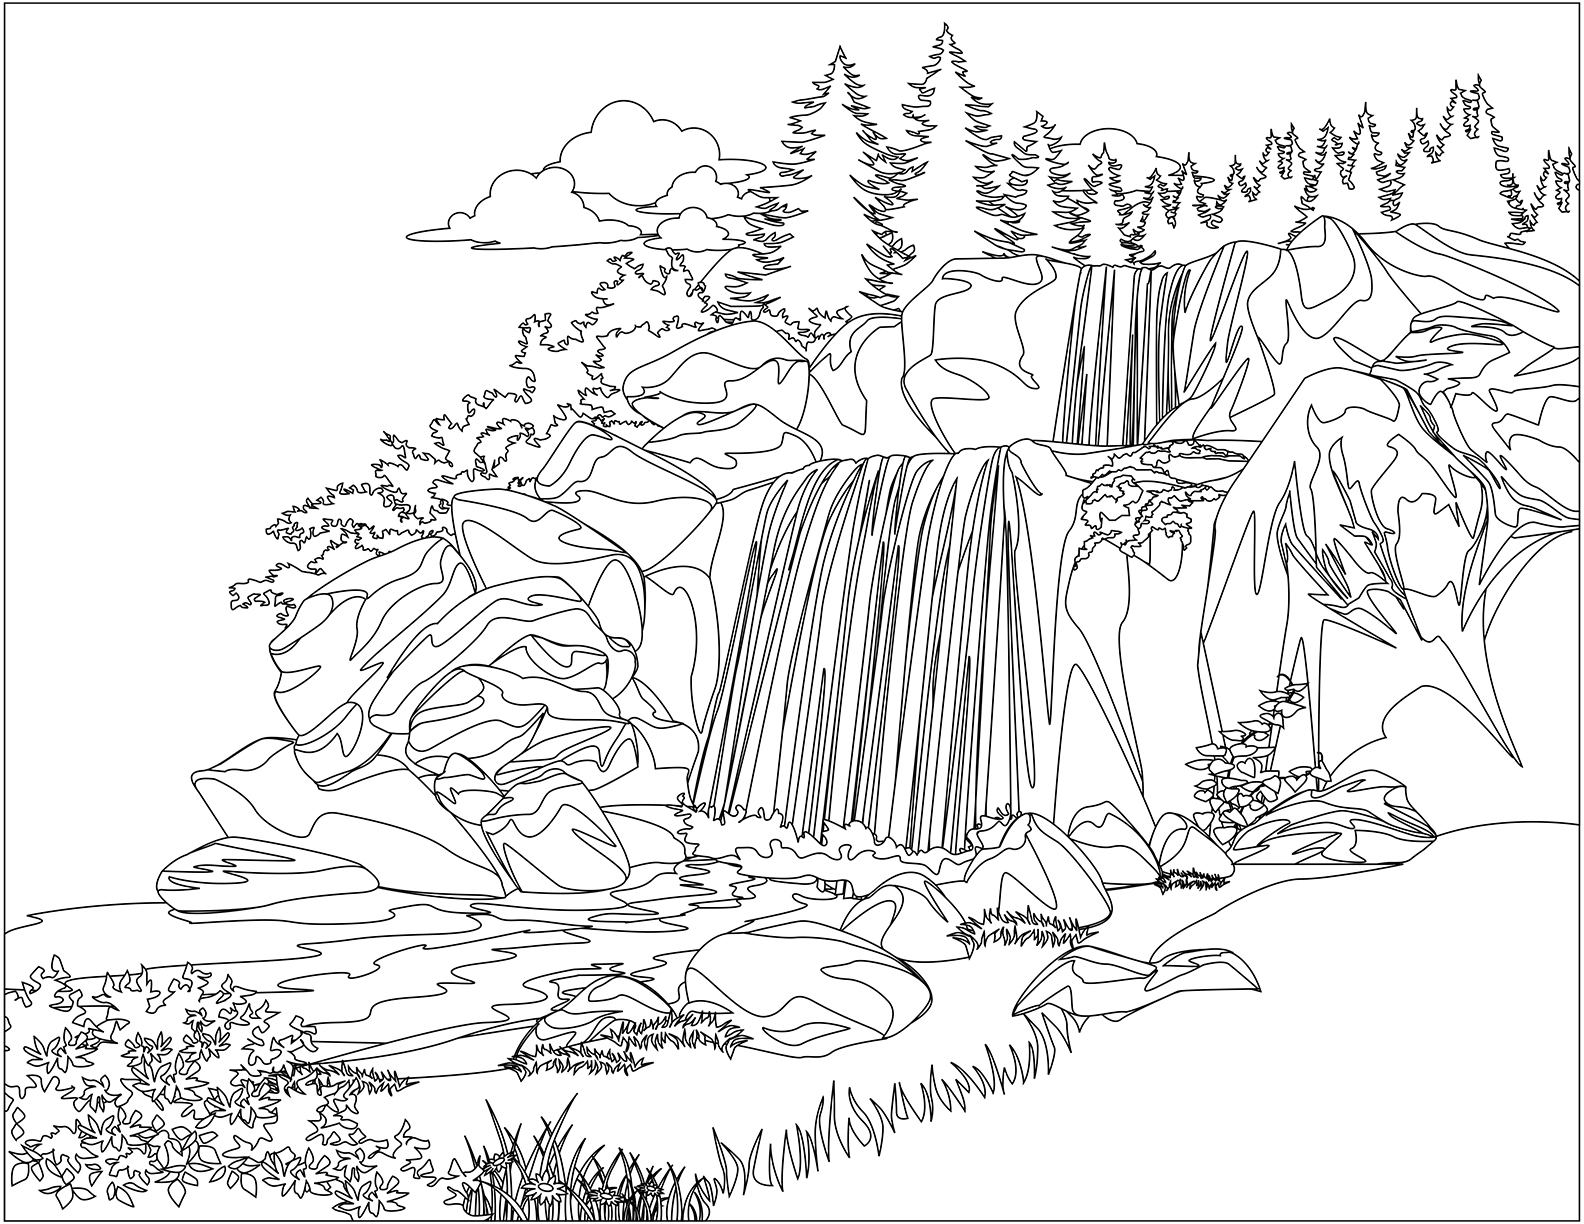 contoh hd gambar sketsa air terjun